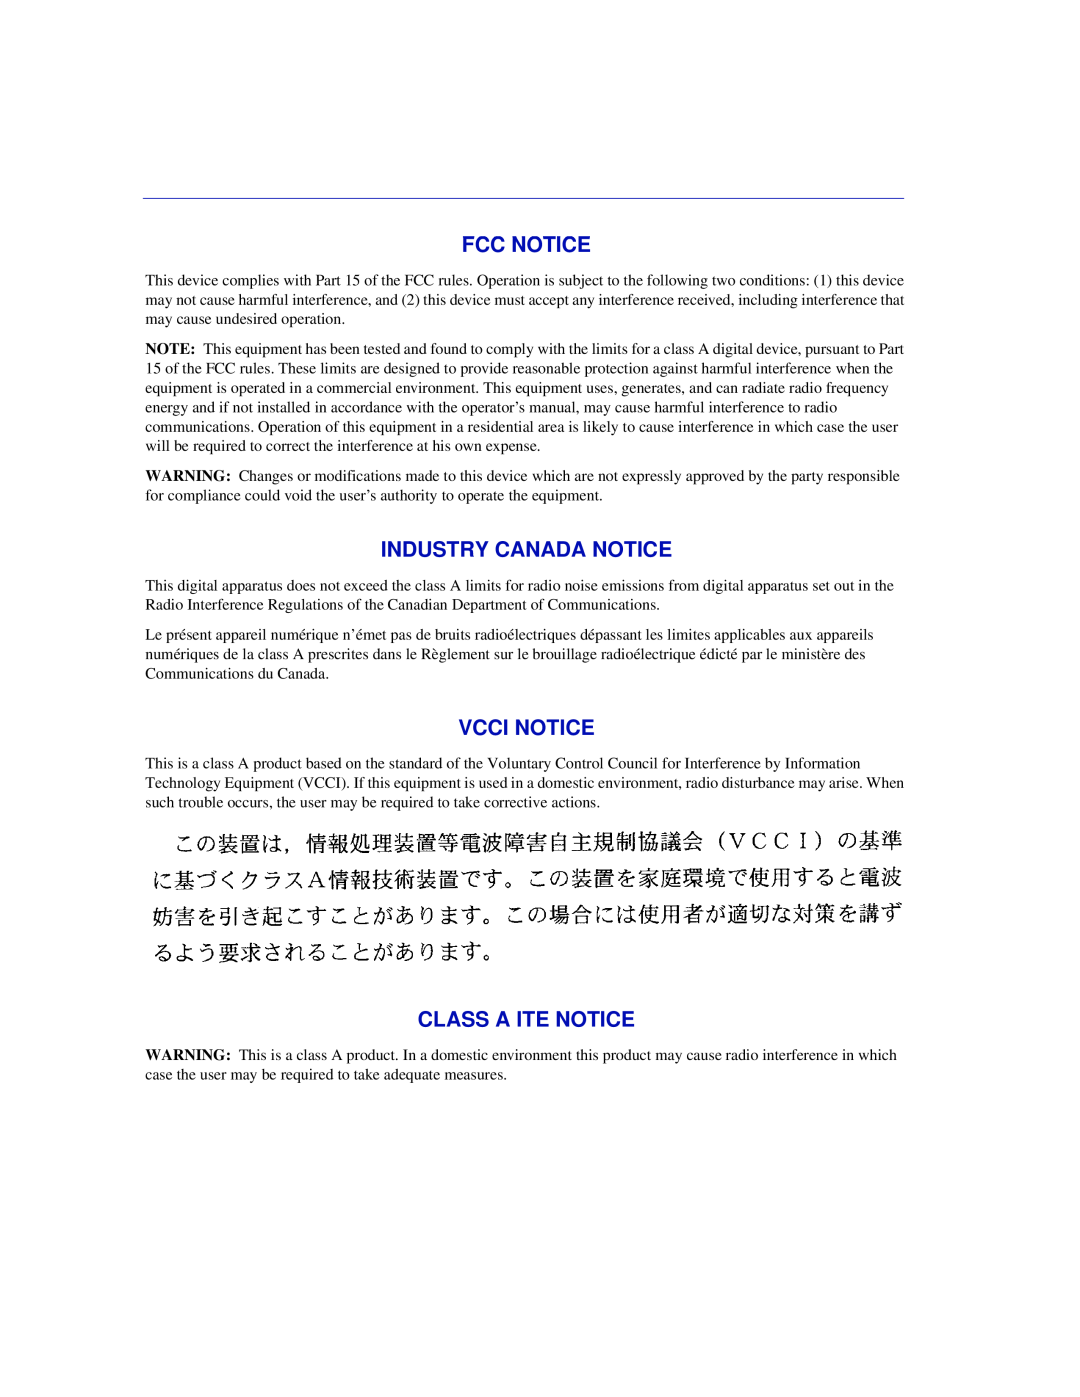 Enterasys Networks 6H302-48 manual Fcc Notice, Industry Canada Notice, Vcci Notice, Class A Ite Notice 